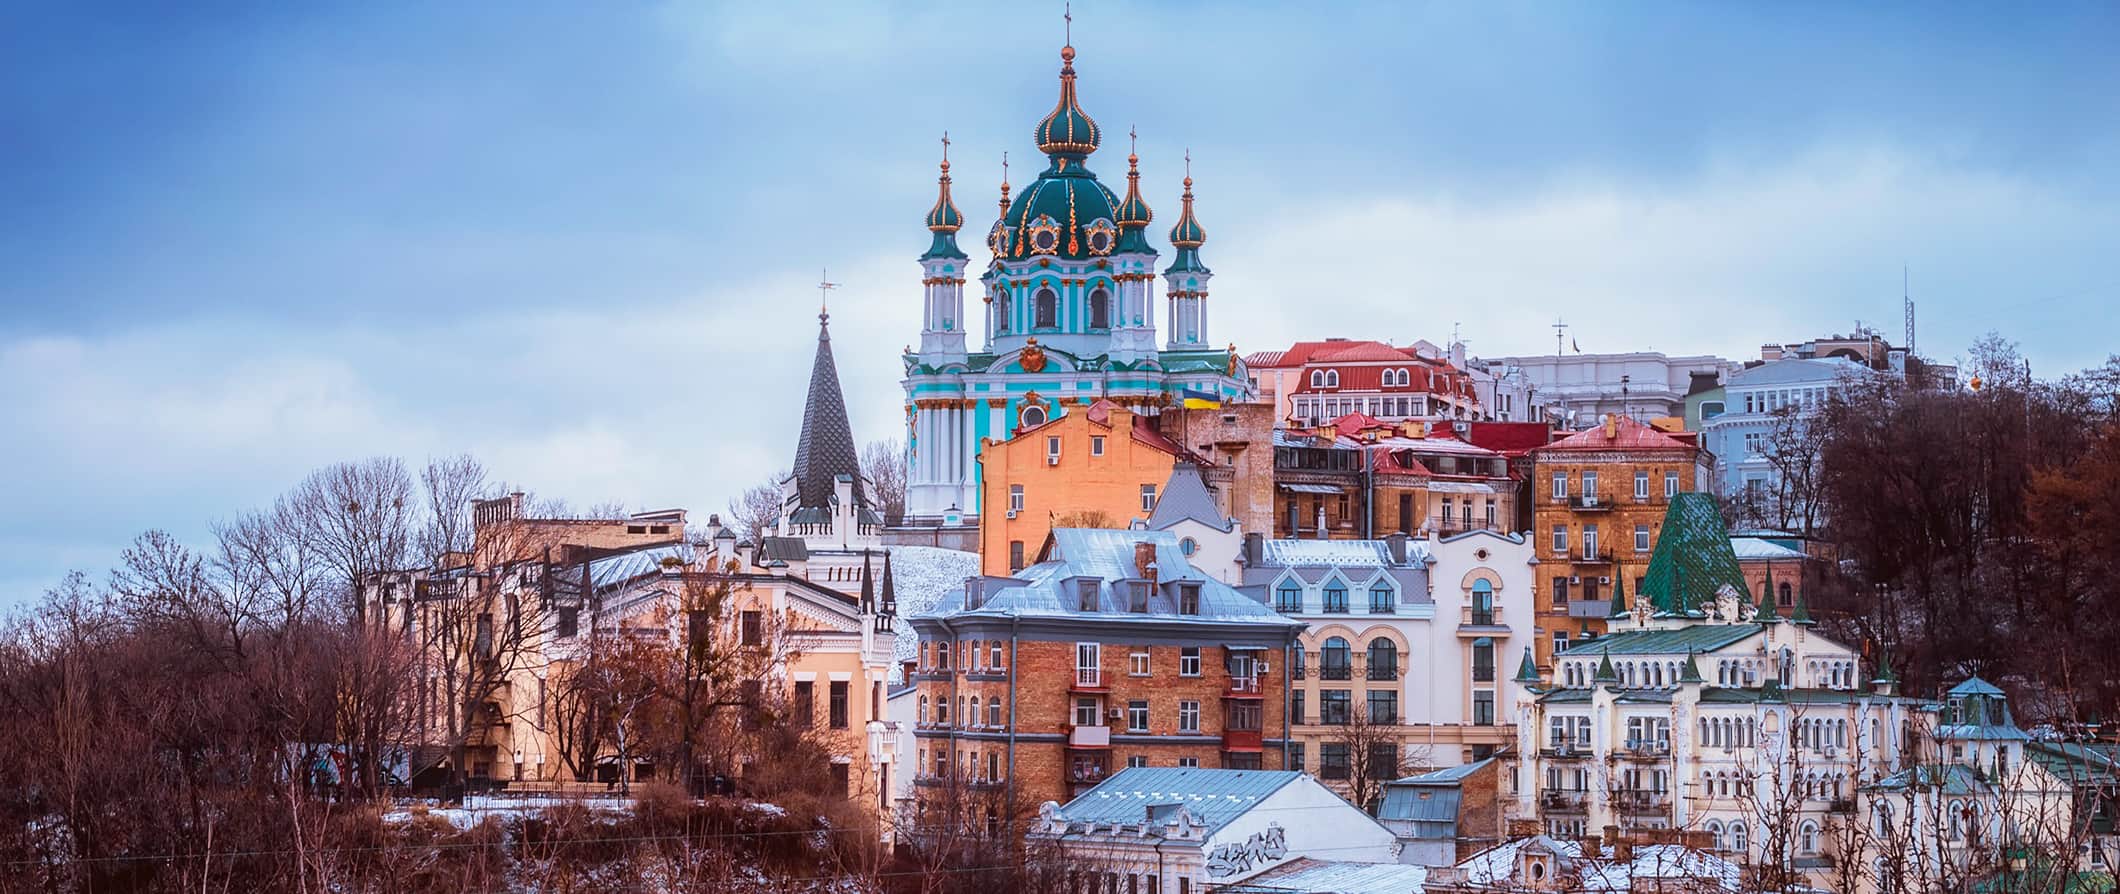 Arquitetura colorida e histórica em Kiev, Ucrânia, no inverno